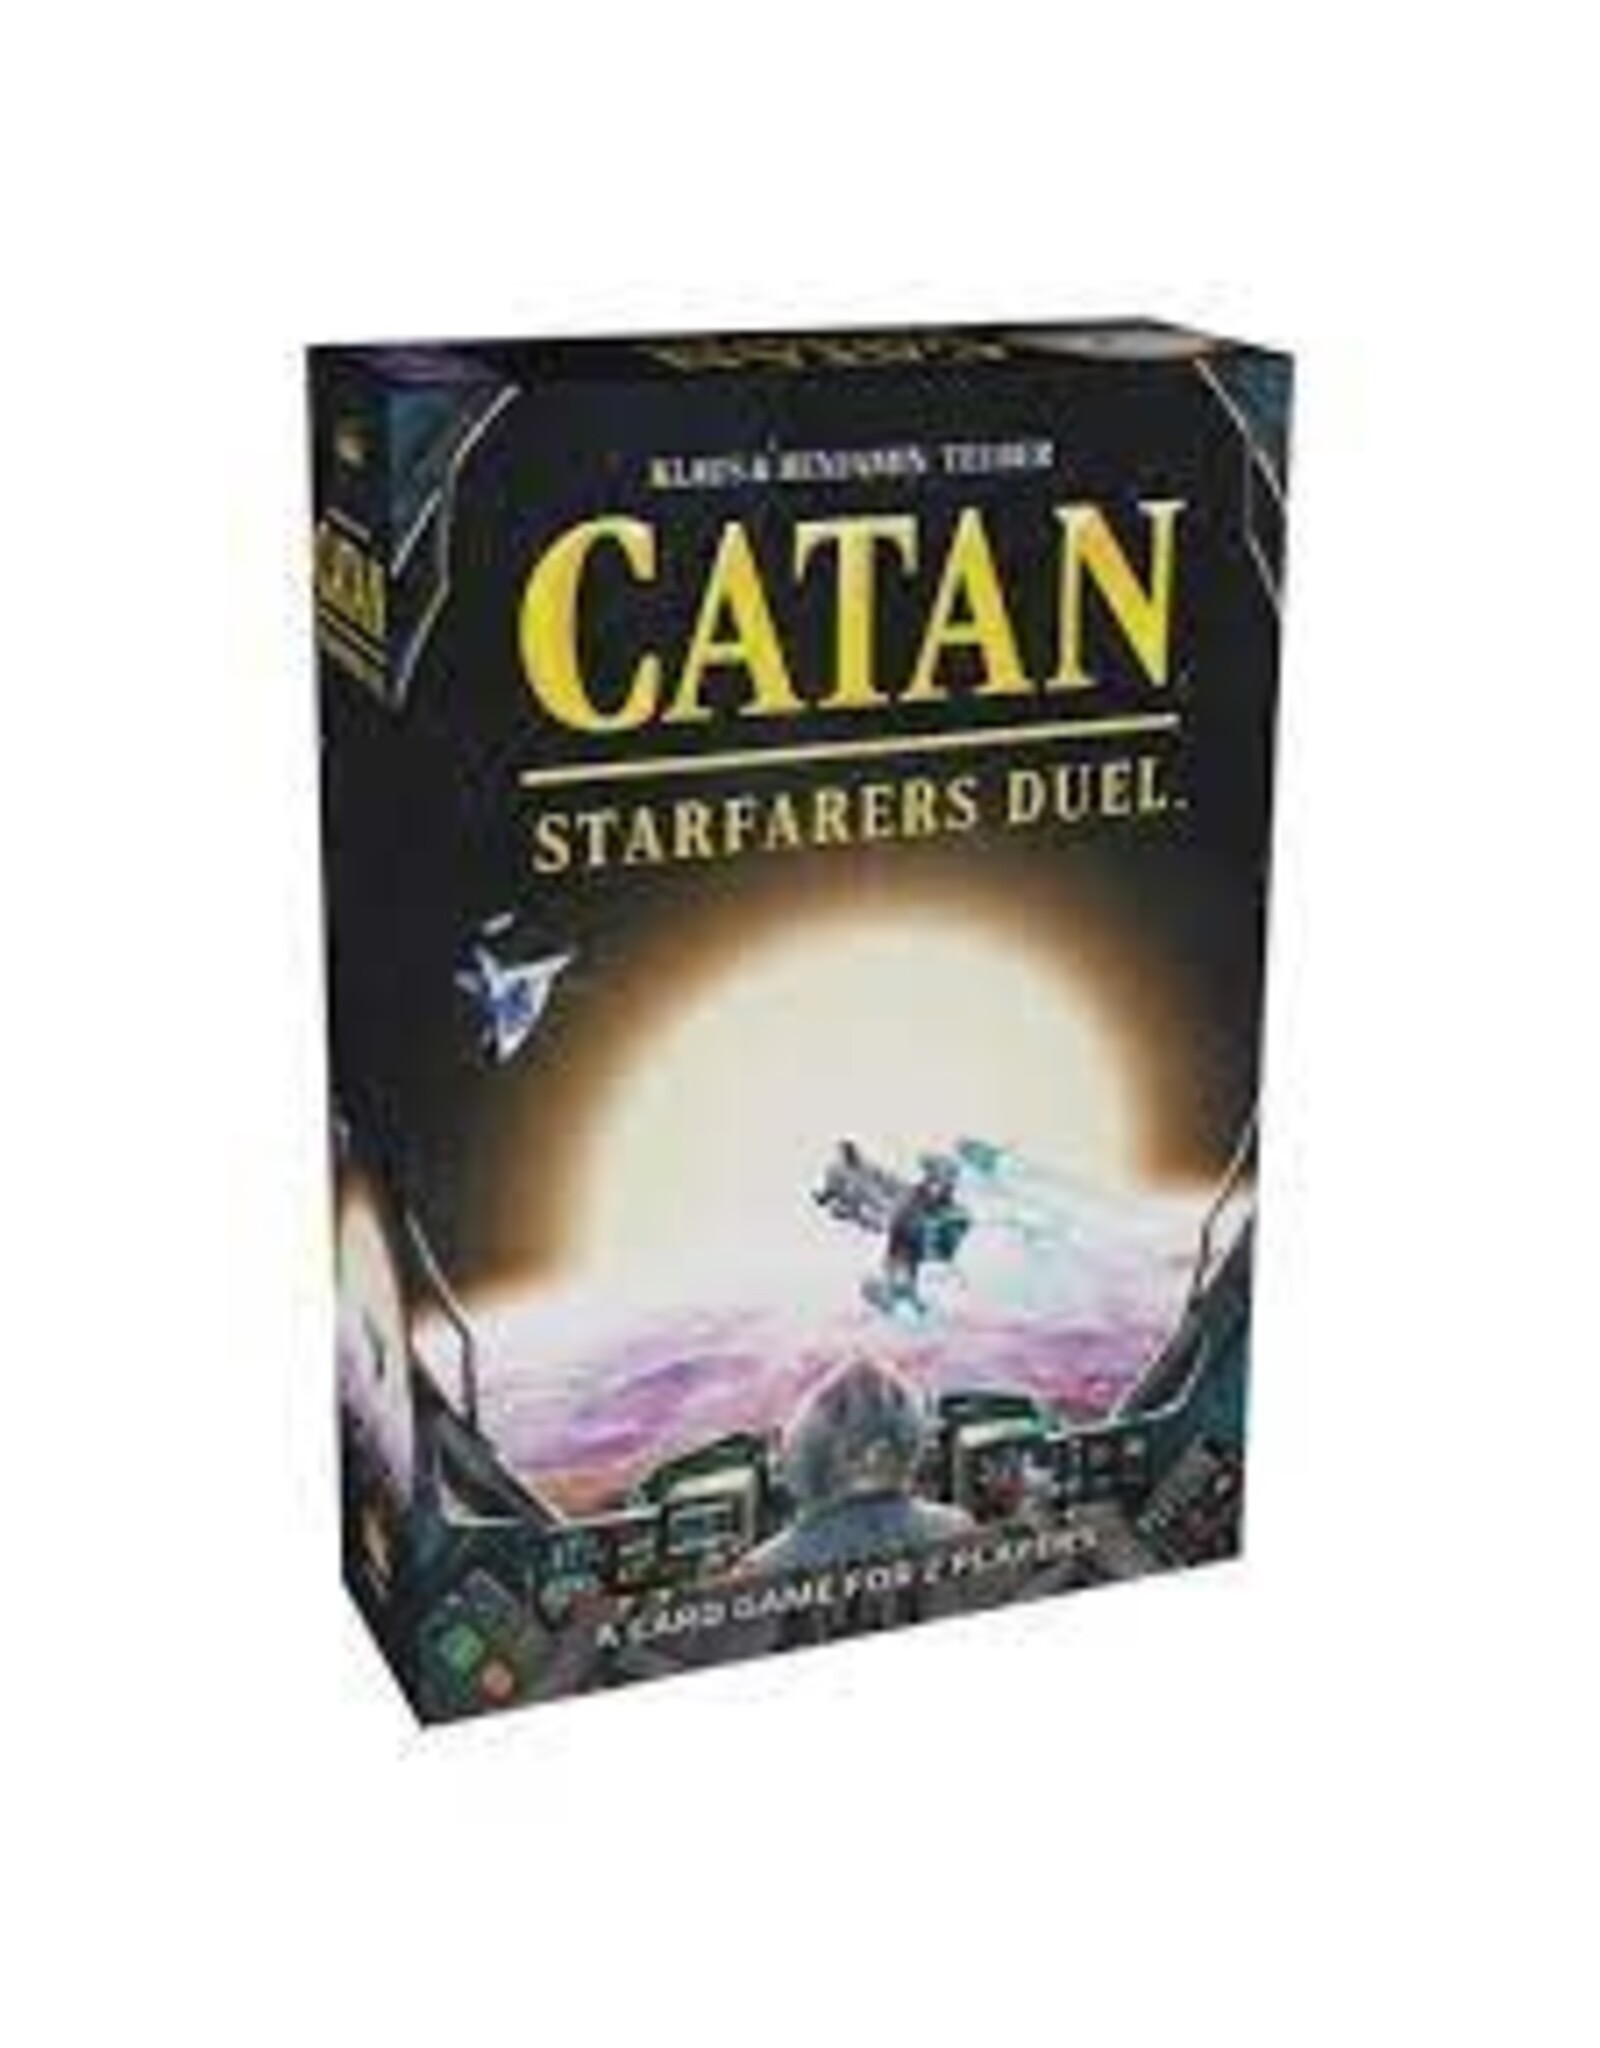 Catan Studio Catan Starfarers Duel